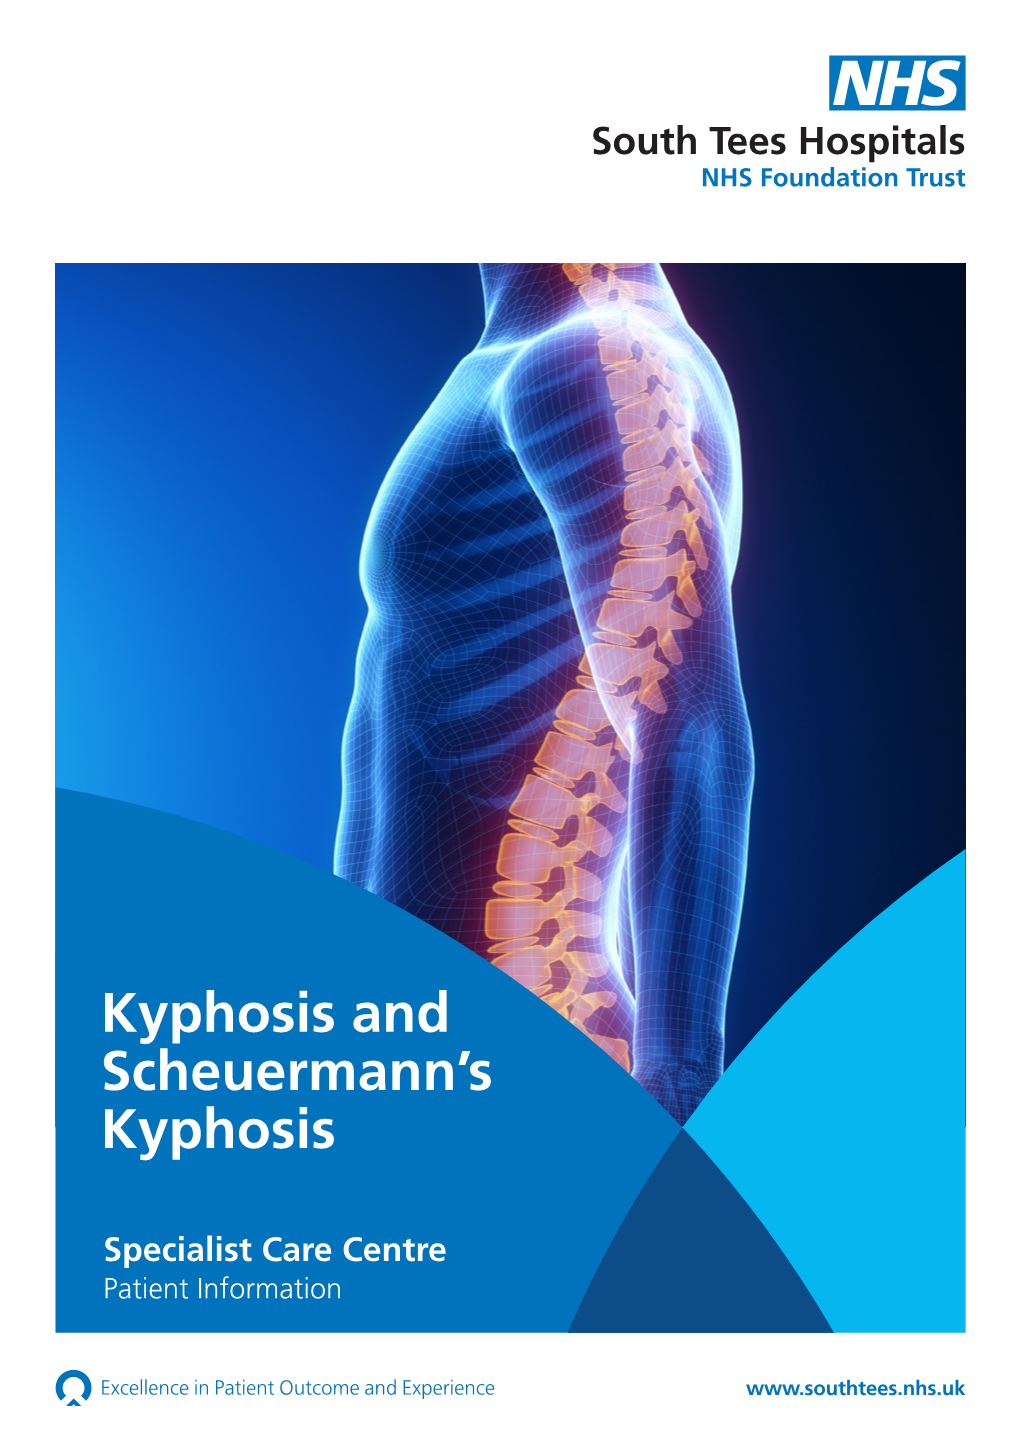 What Is Scheuermann's Kyphosis?